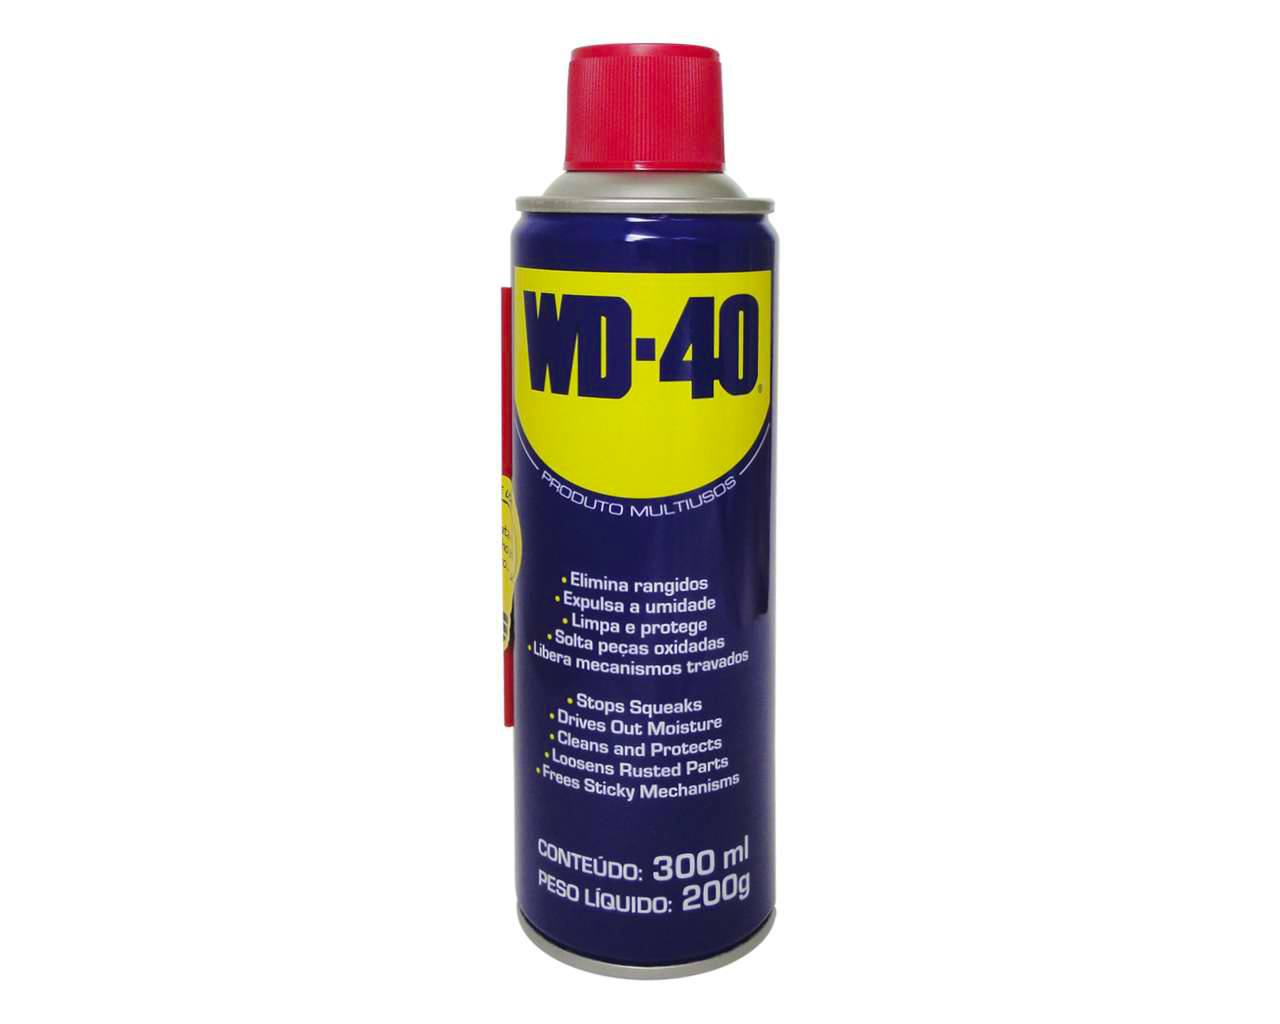 WD-40 300ML